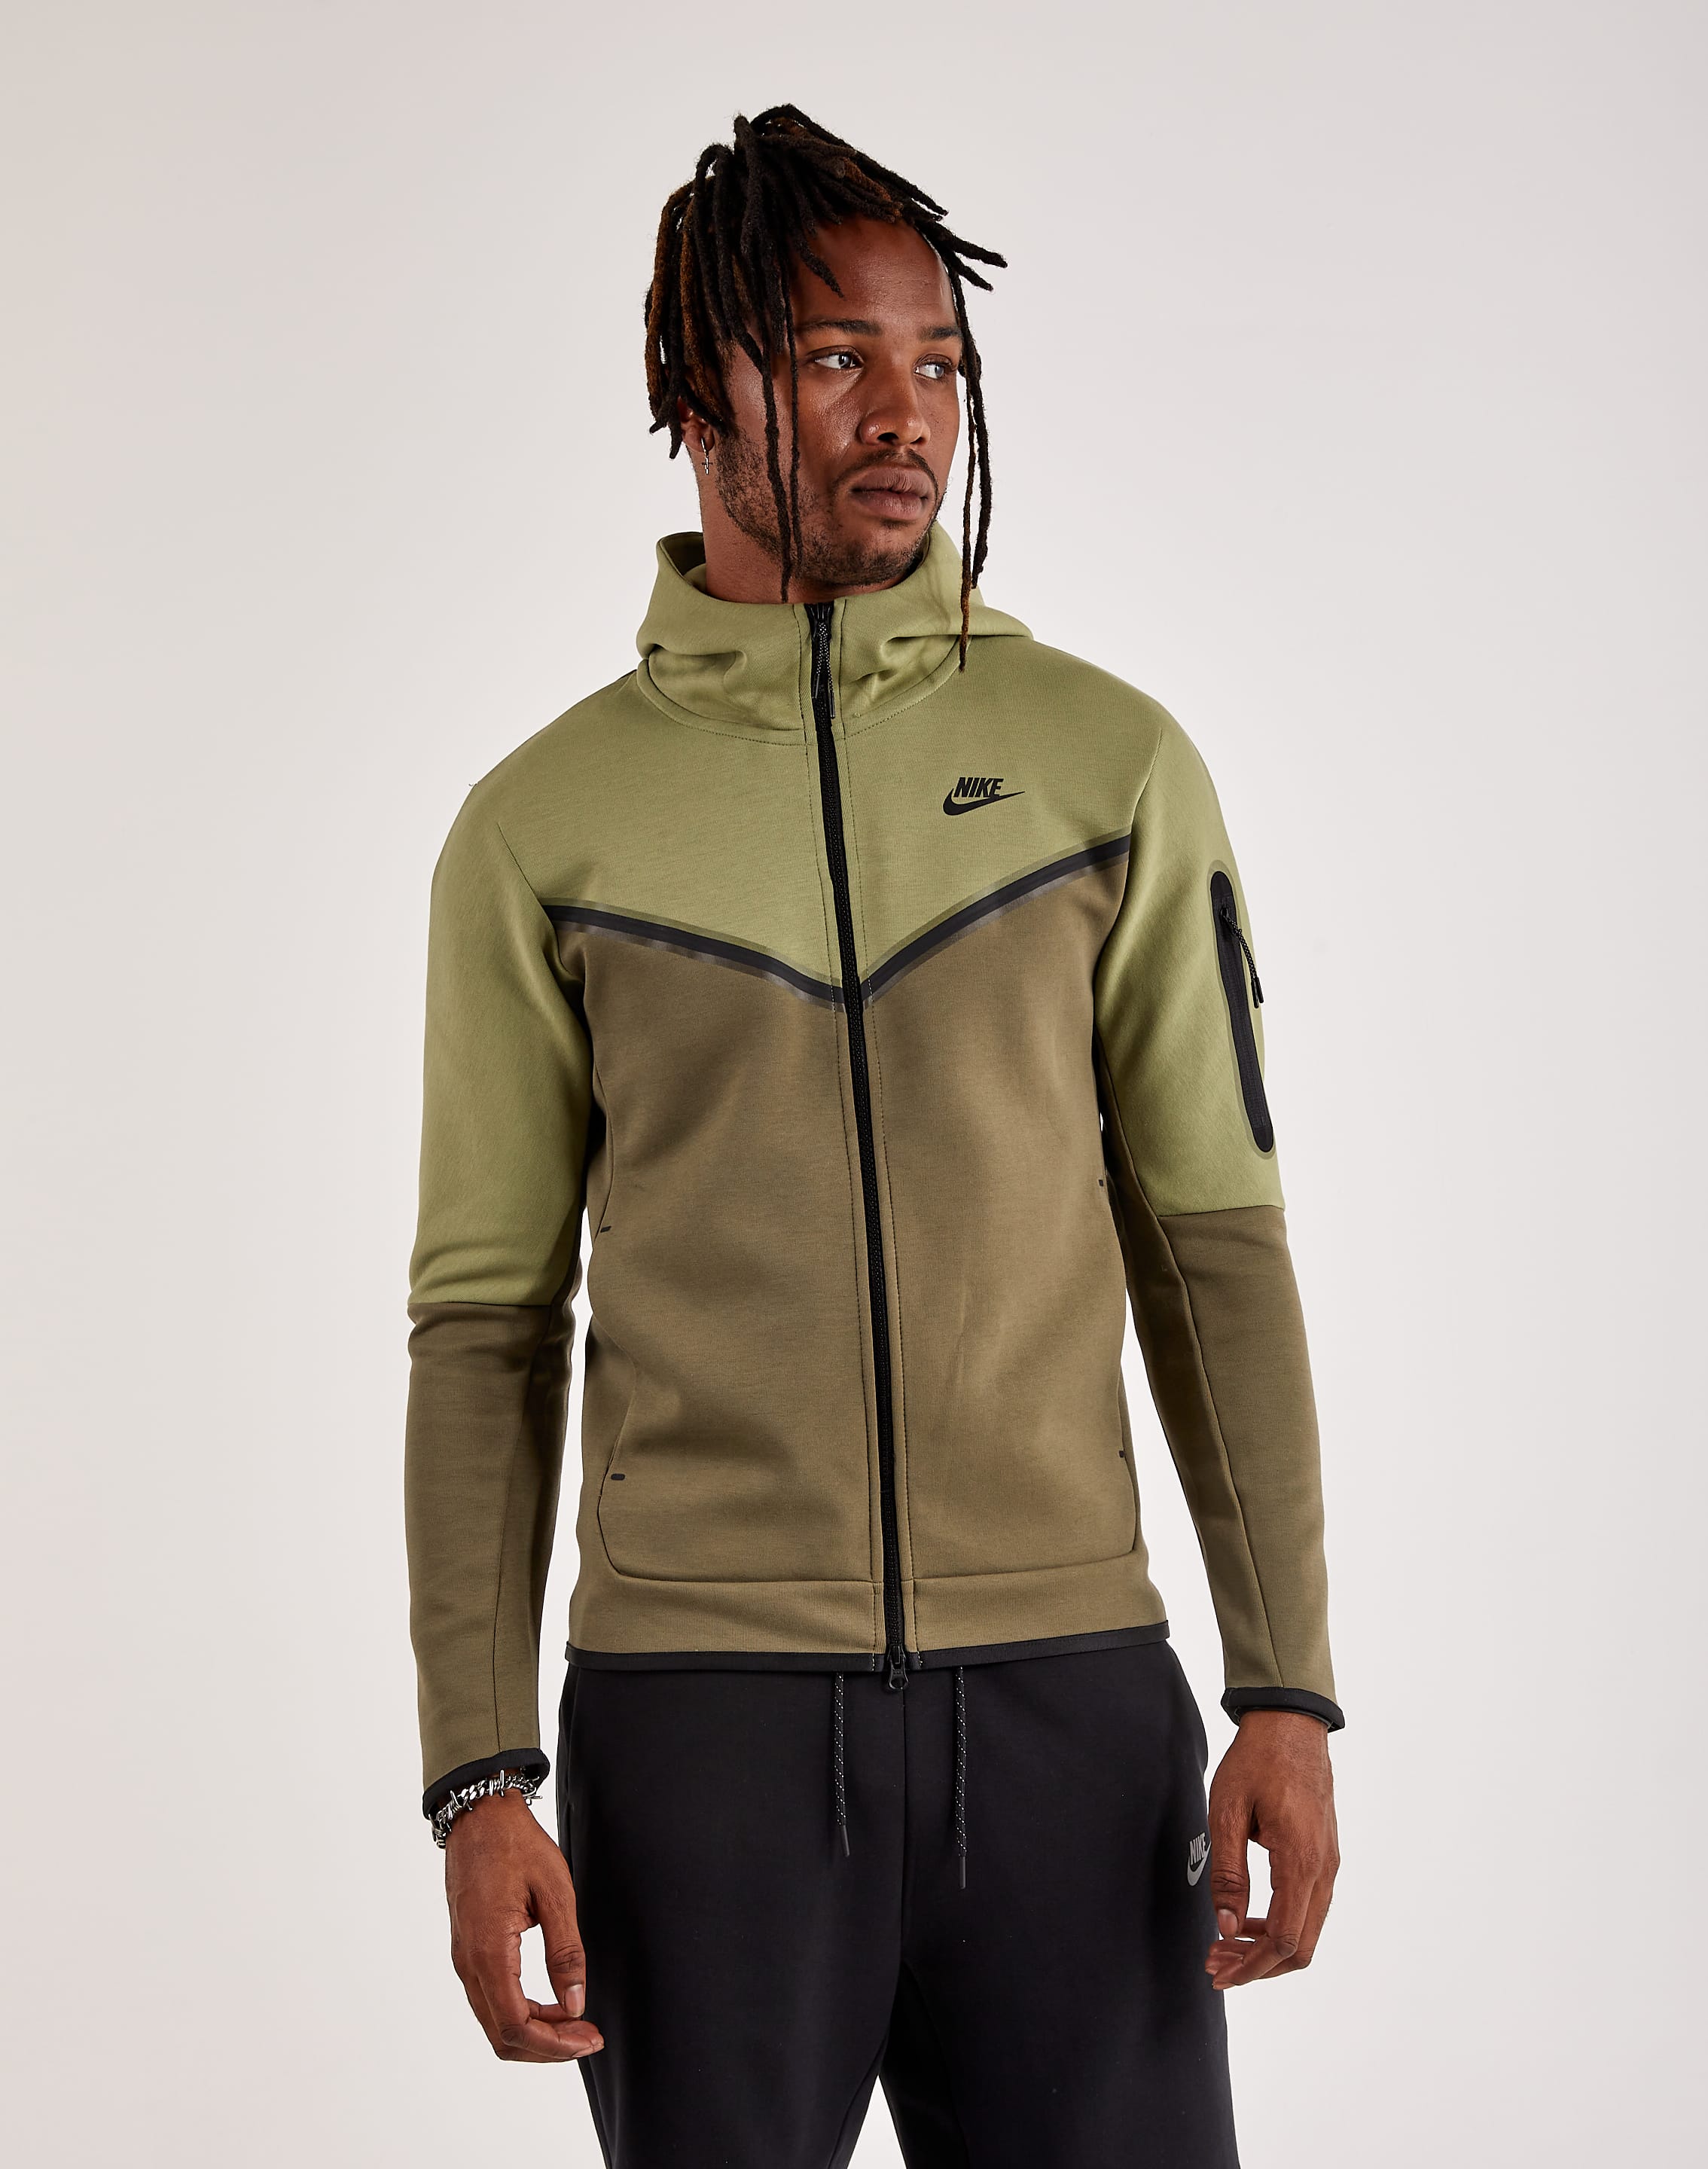 Nike Tech Fleece zip hoodie in black and gray colorblock